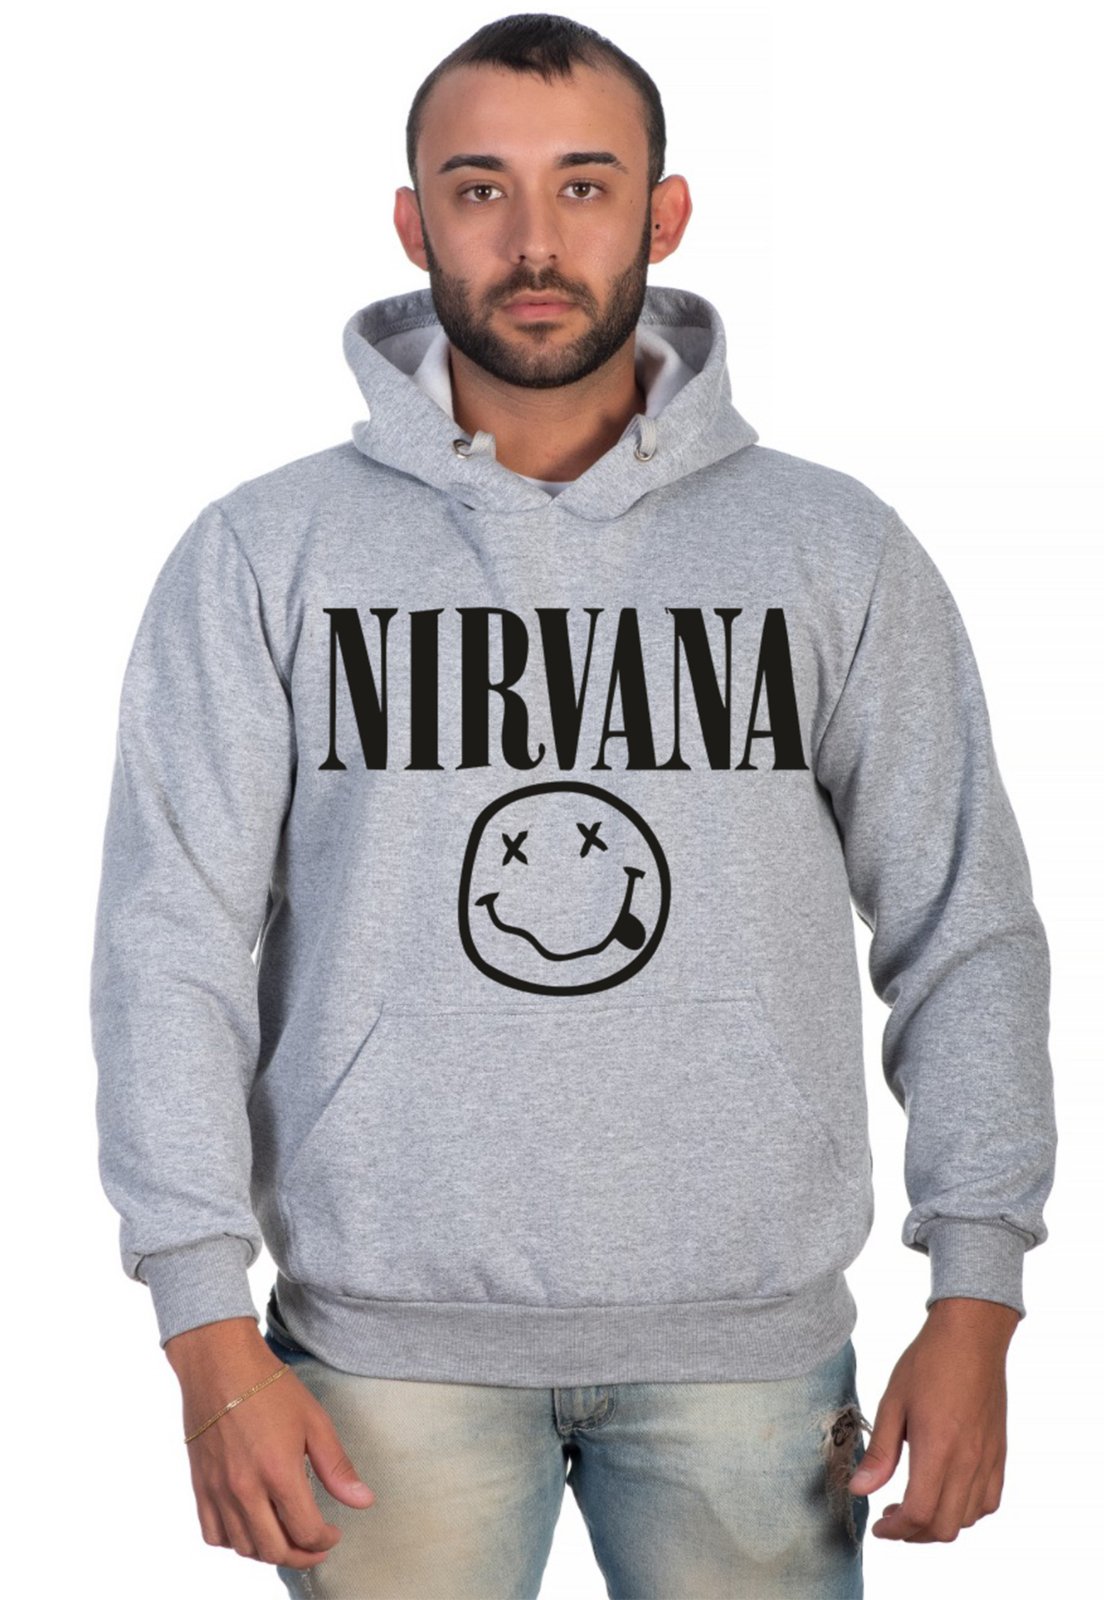 blusa de frio nirvana